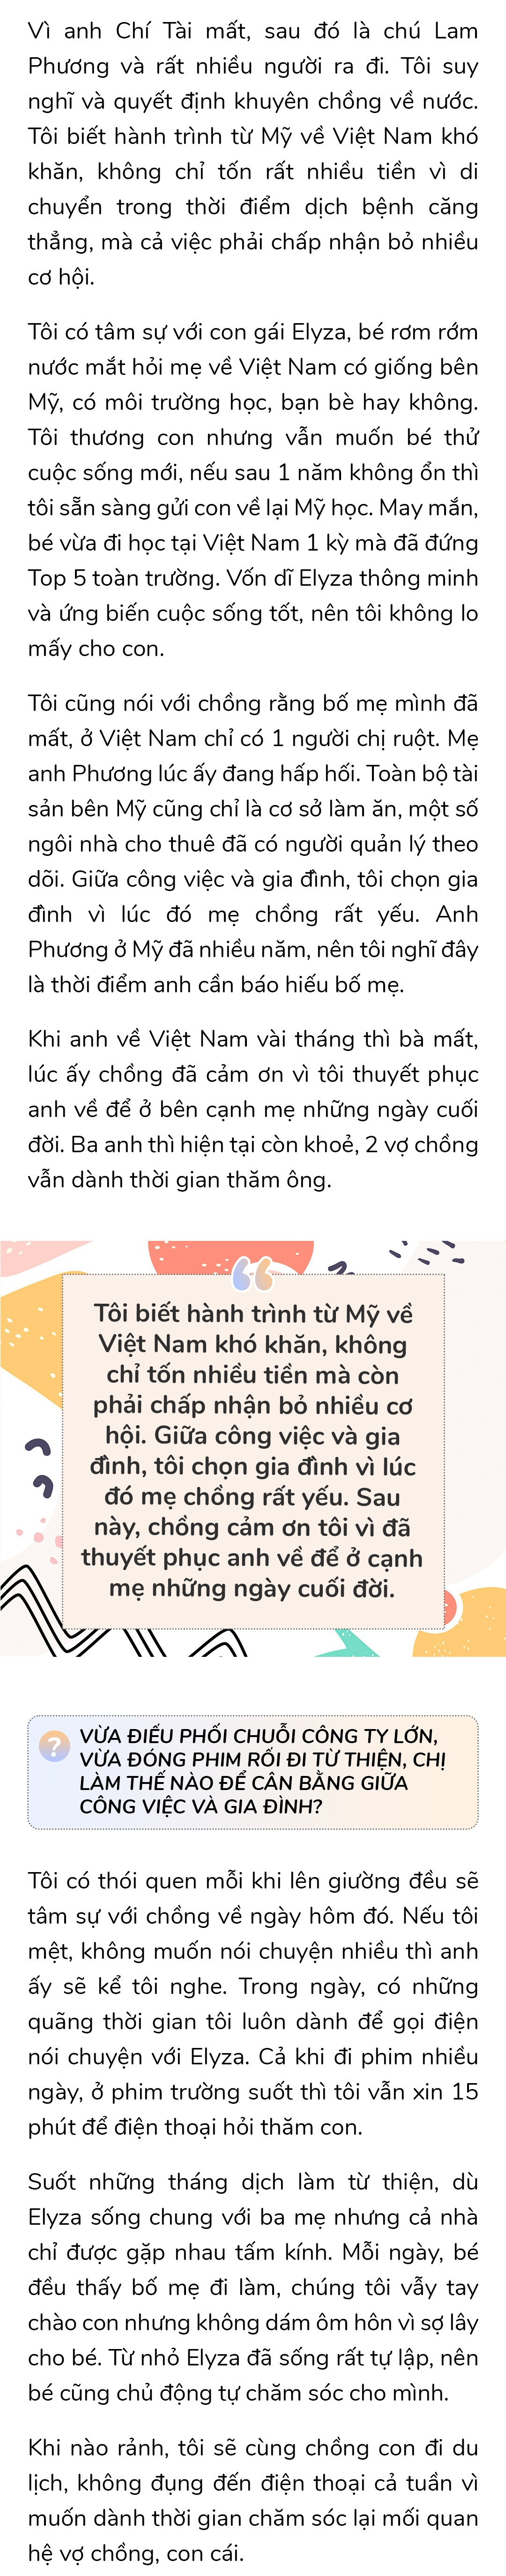 Chồng Việt Hương cảm ơn vợ vì thuyết phục mình về nước, gần 20 năm nói yêu trước khi ngủ - 24